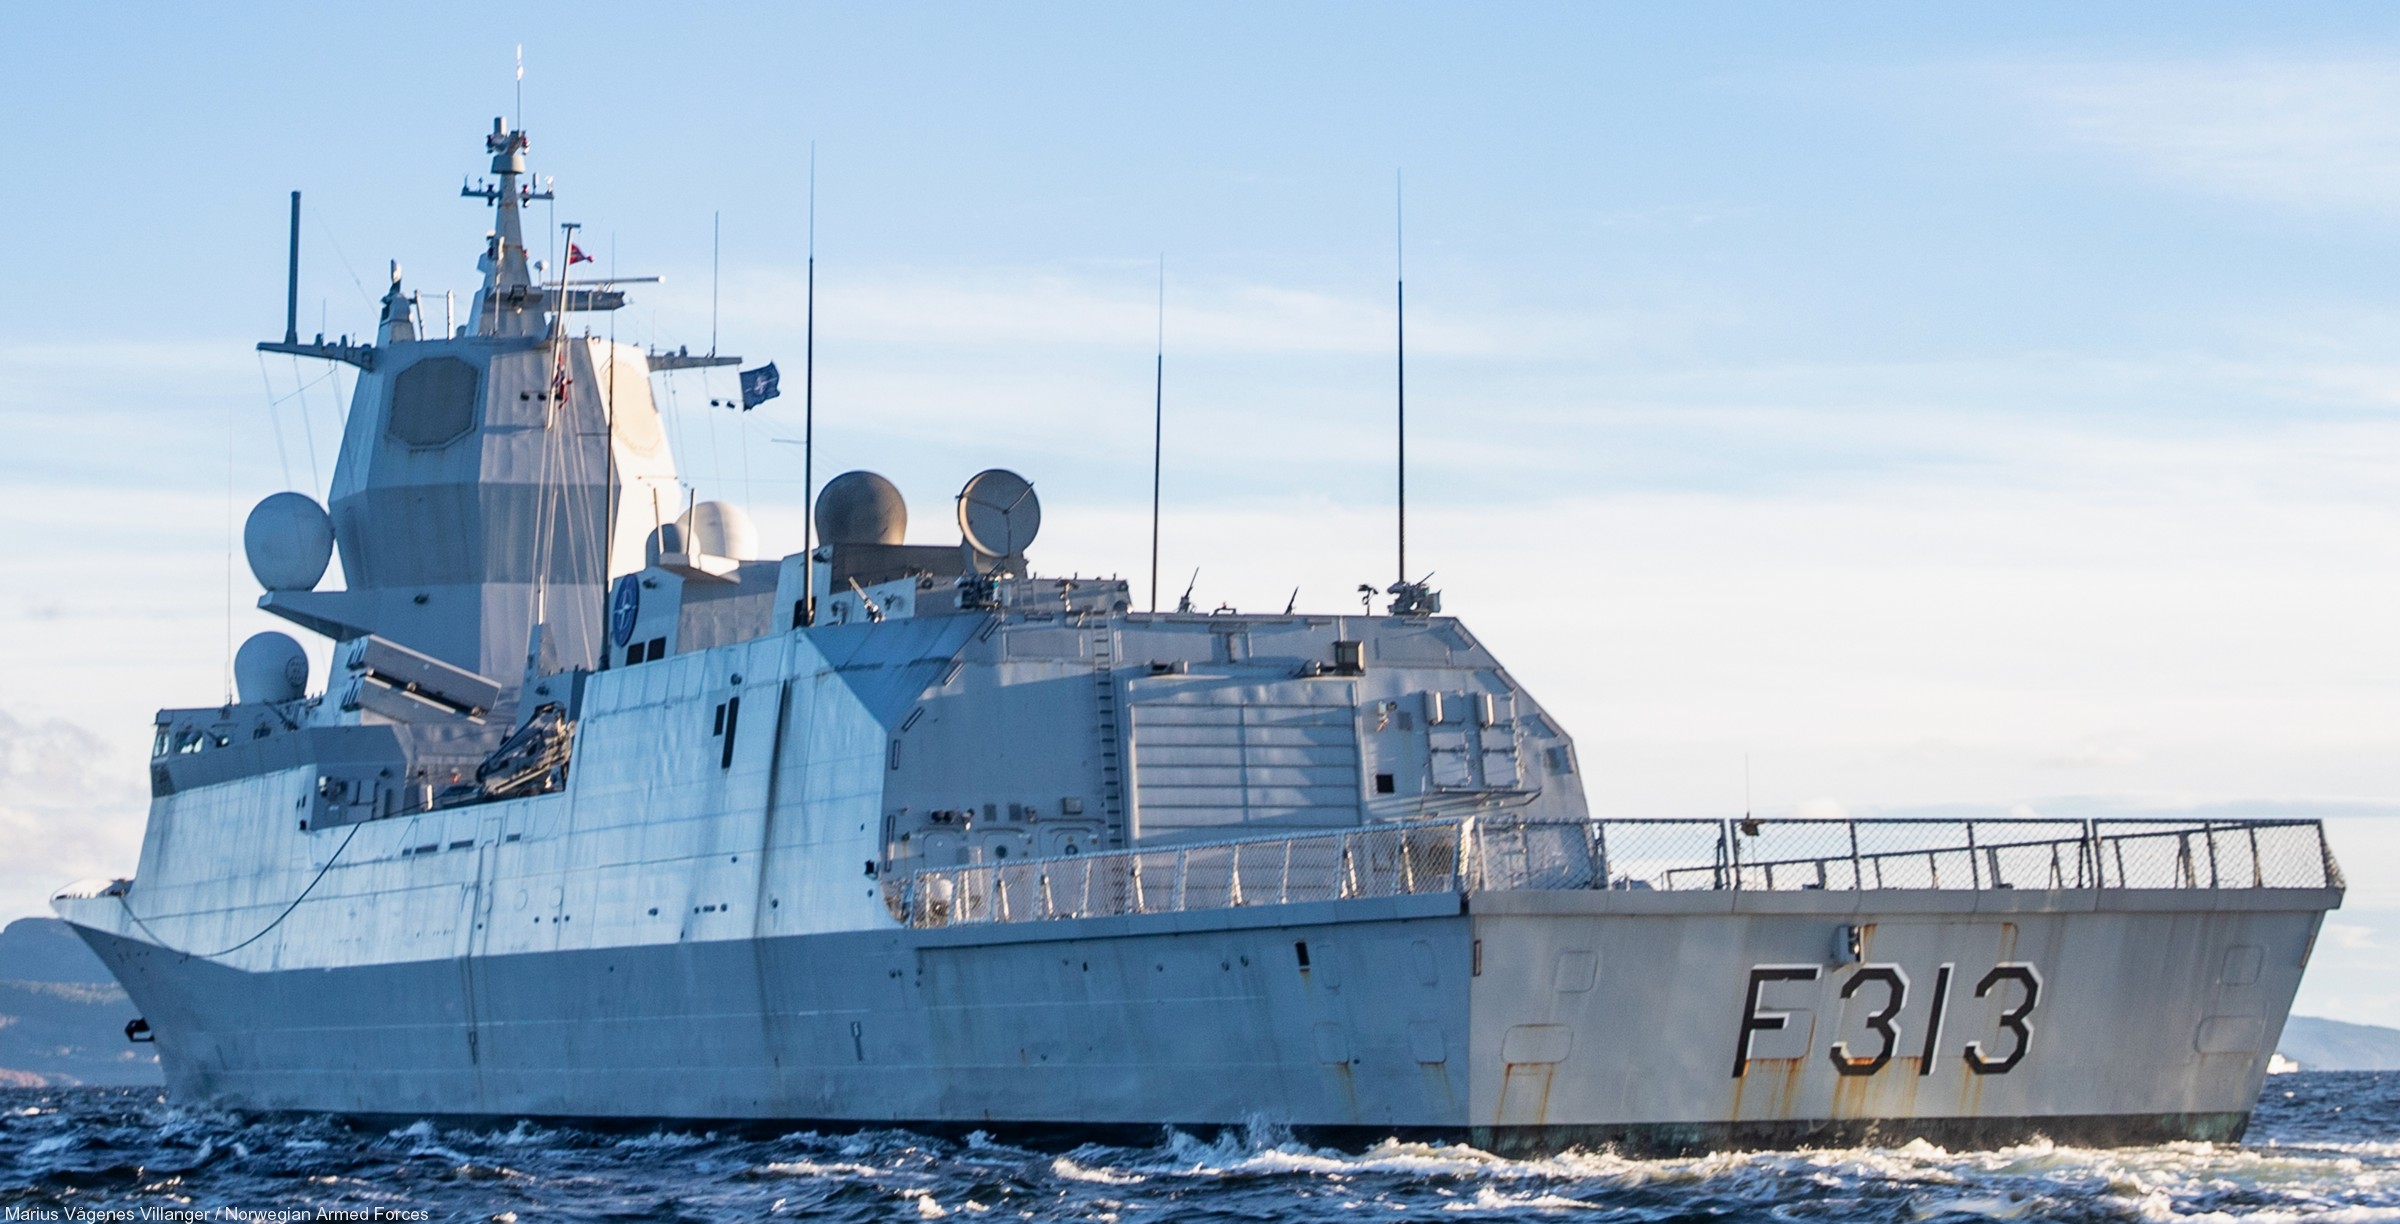 f-313 hnoms knm helge ingstad fridtjof nansen class frigate royal norwegian navy 19x